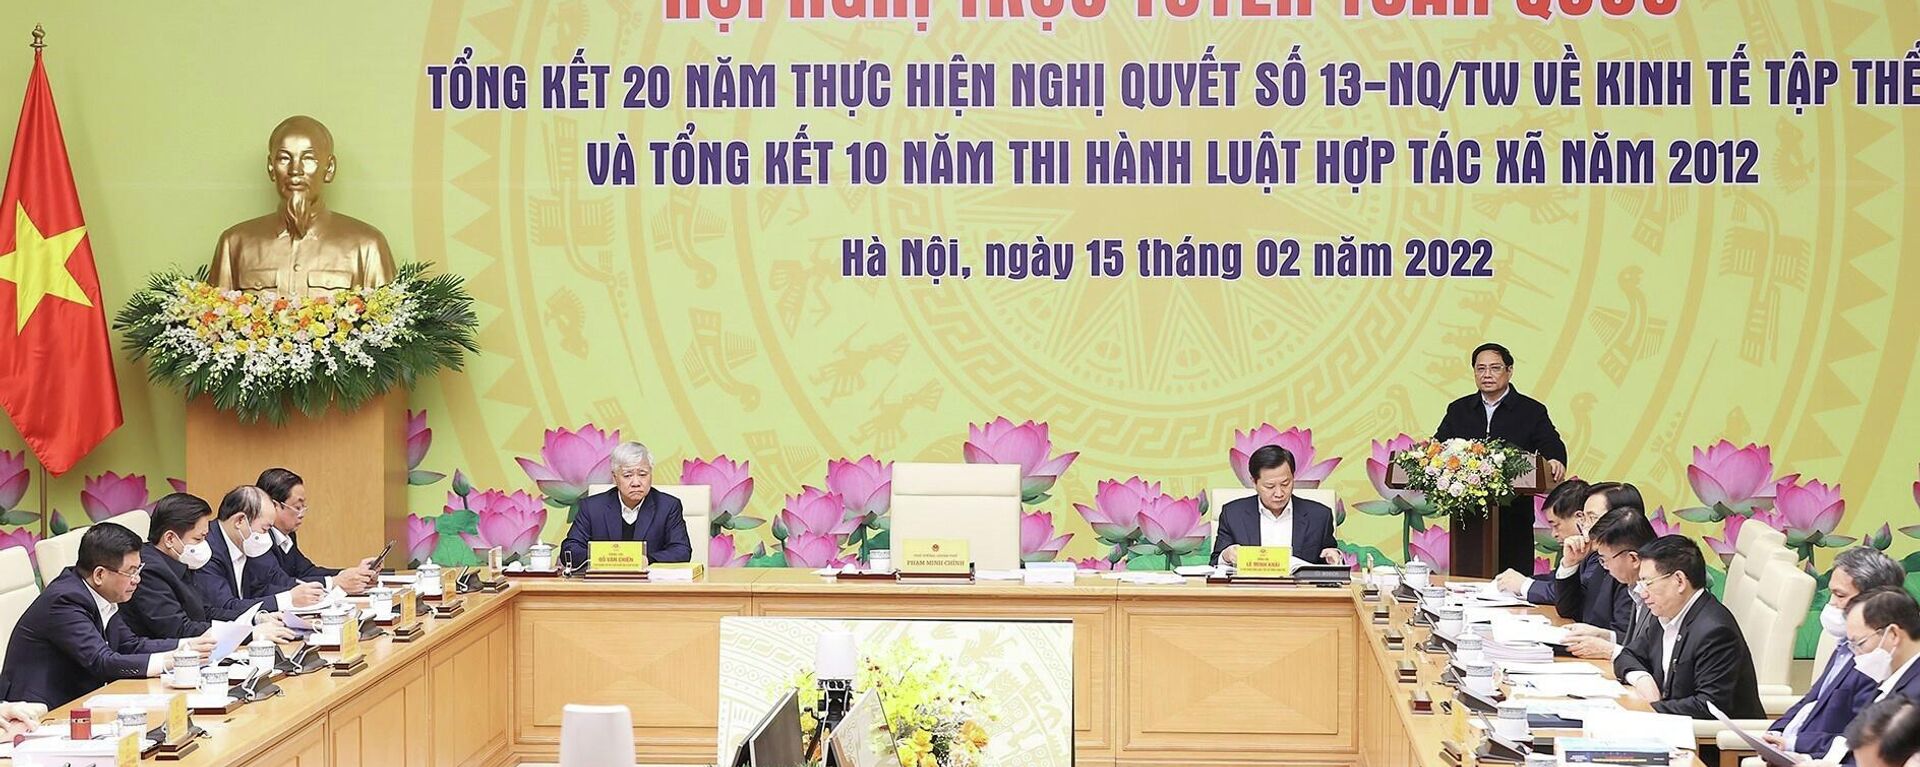 Thủ tướng Phạm Minh Chính chủ trì Hội nghị tổng kết 20 năm thực hiện Nghị quyết số 13 về kinh tế tập thể - Sputnik Việt Nam, 1920, 15.02.2022